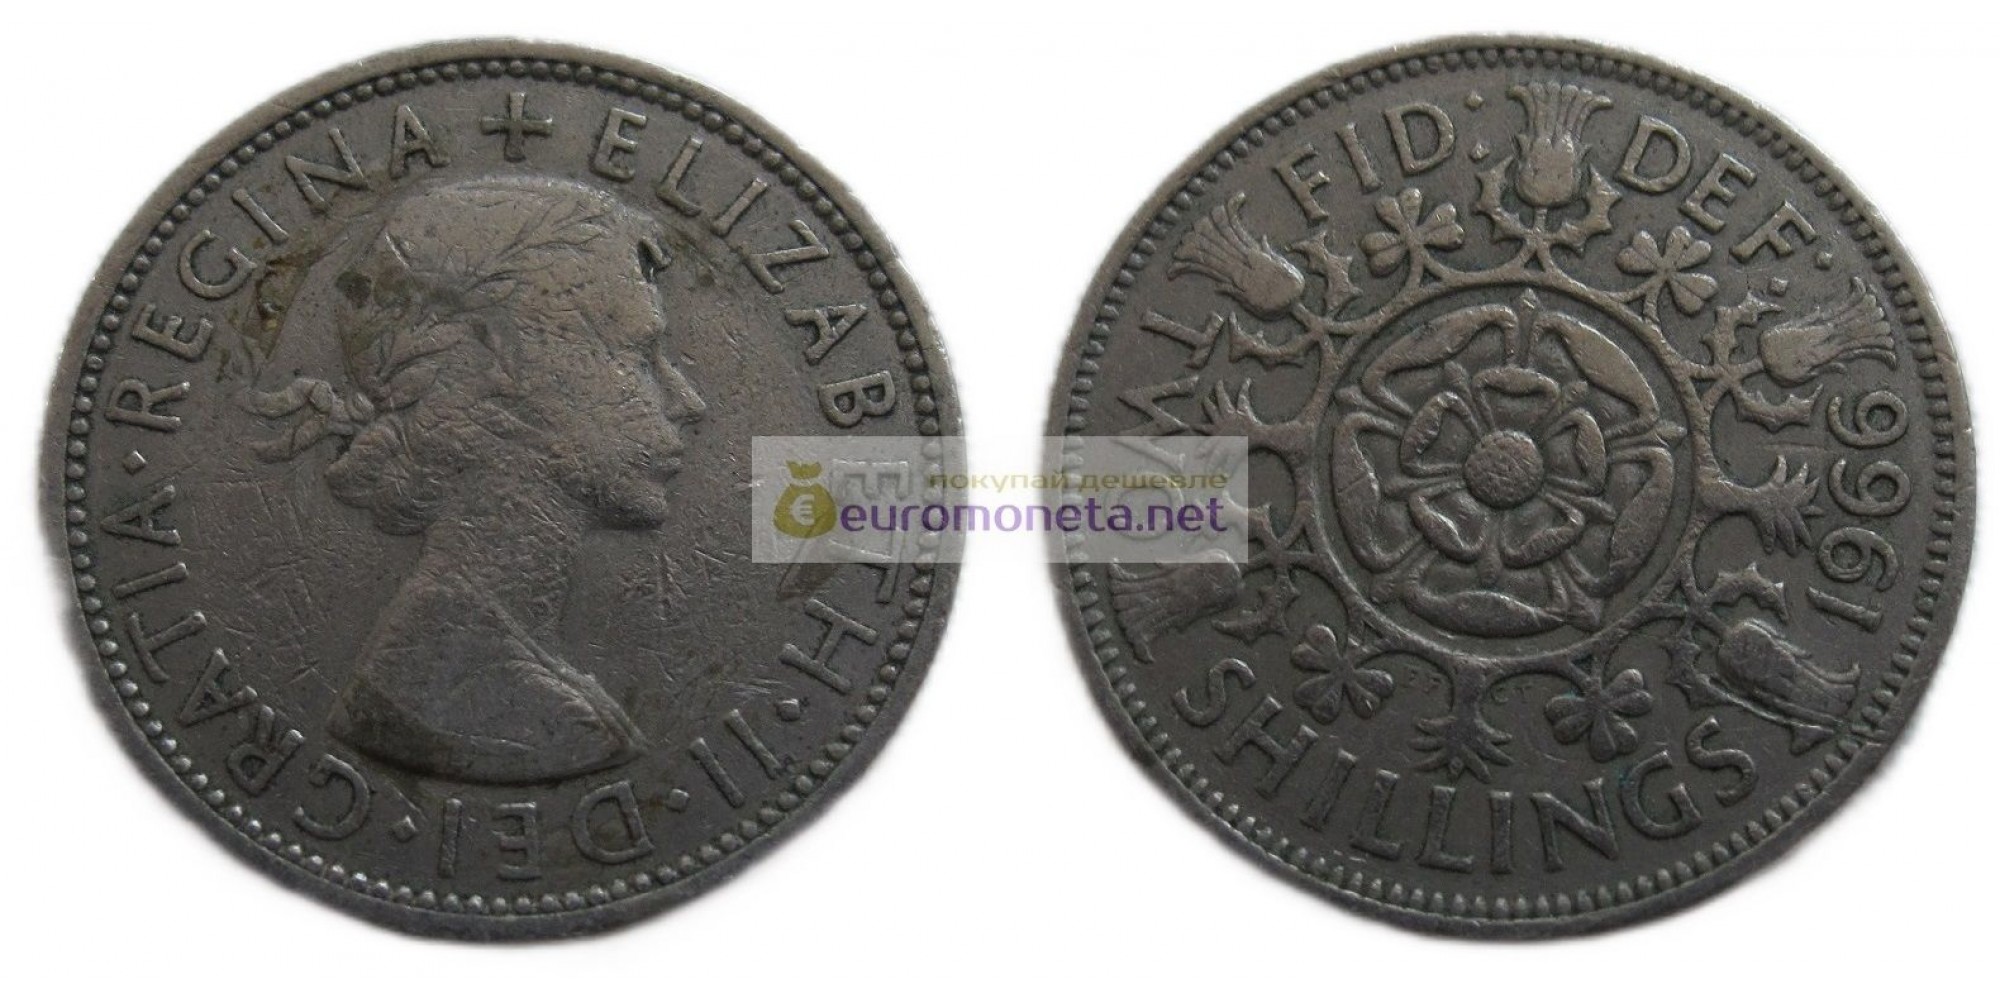 Великобритания 2 шиллинга (флорин) 1966 год. Королева Елизавета II